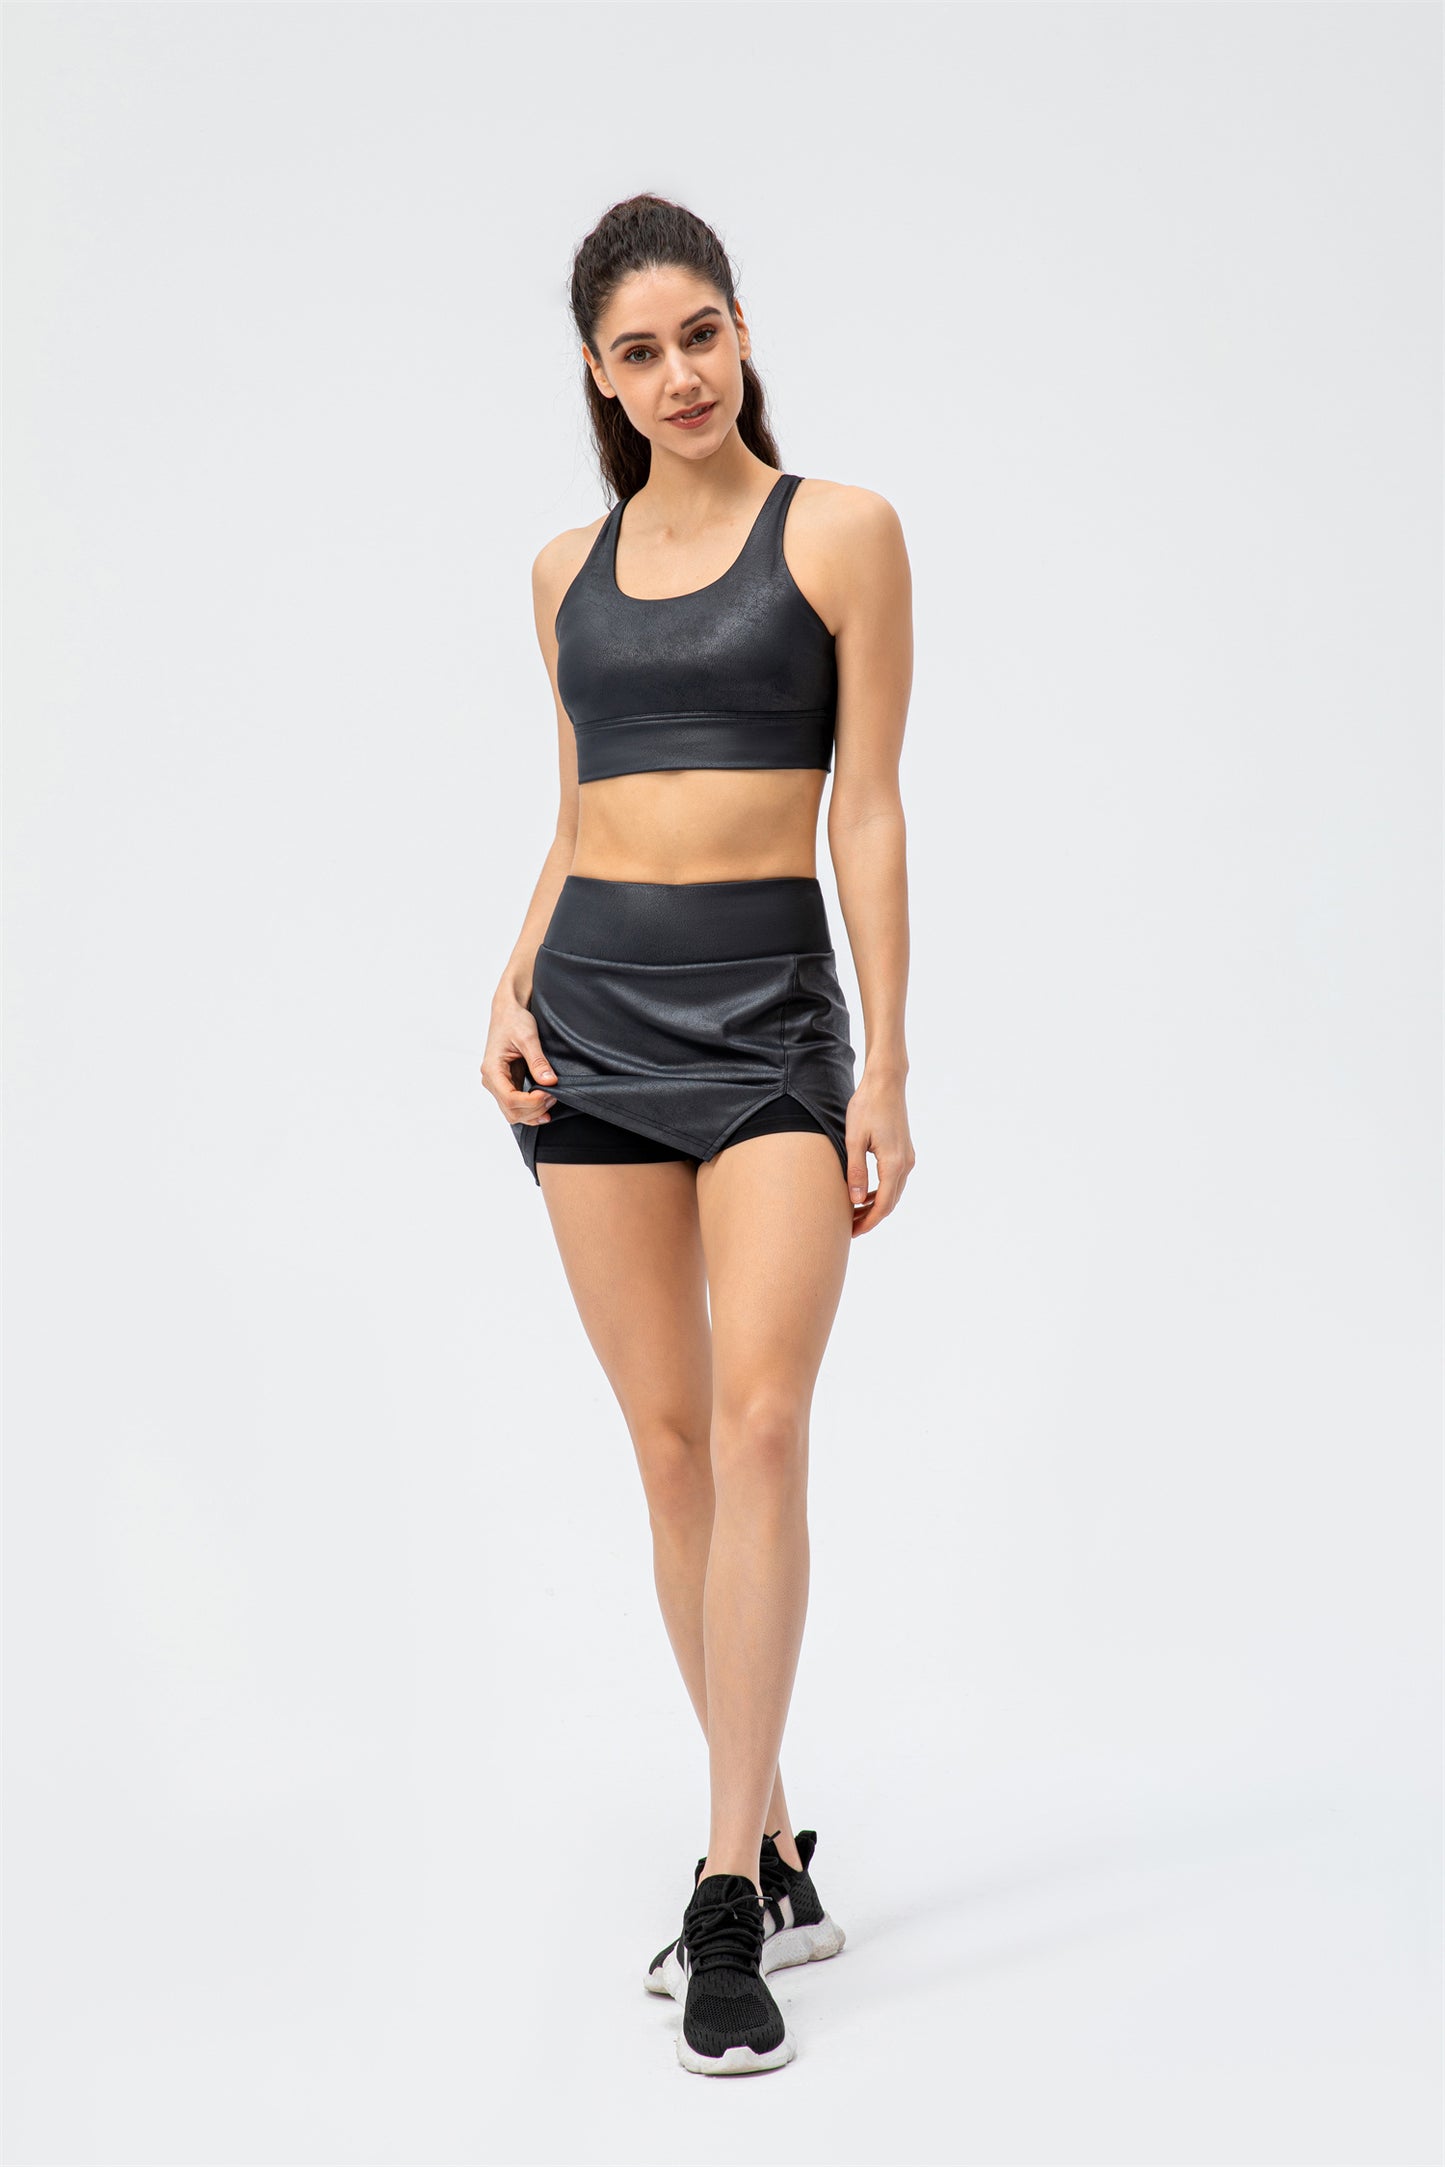 Everyday Tennis Skirt Set- Hot Sweat Battlefield